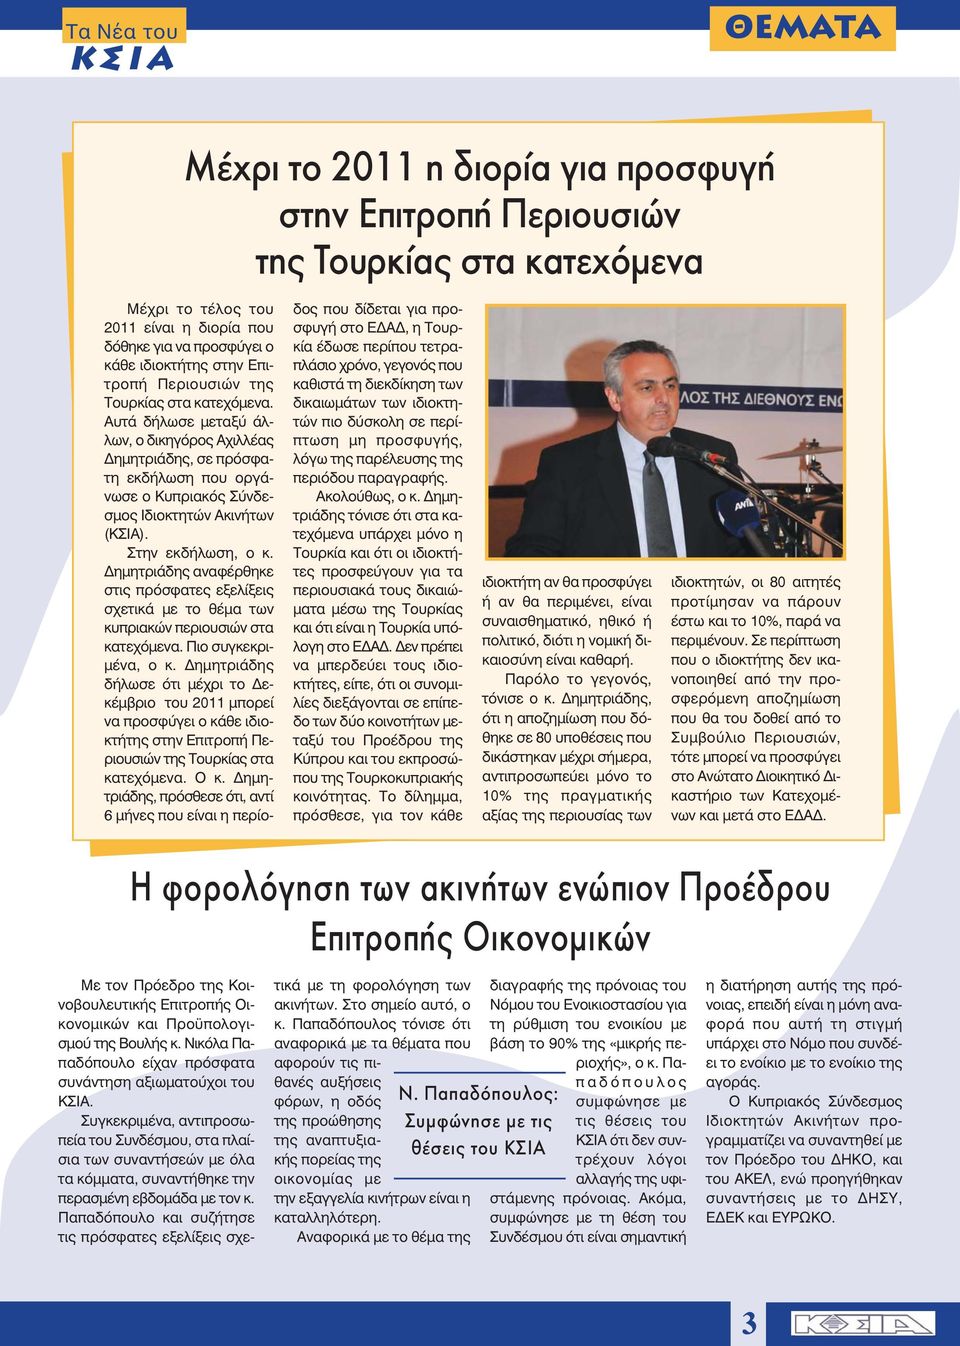 Δημητριάδης αναφέρθηκε στις πρόσφατες εξελίξεις σχετικά με το θέμα των κυπριακών περιουσιών στα κατεχόμενα. Πιο συγκεκριμένα, ο κ.